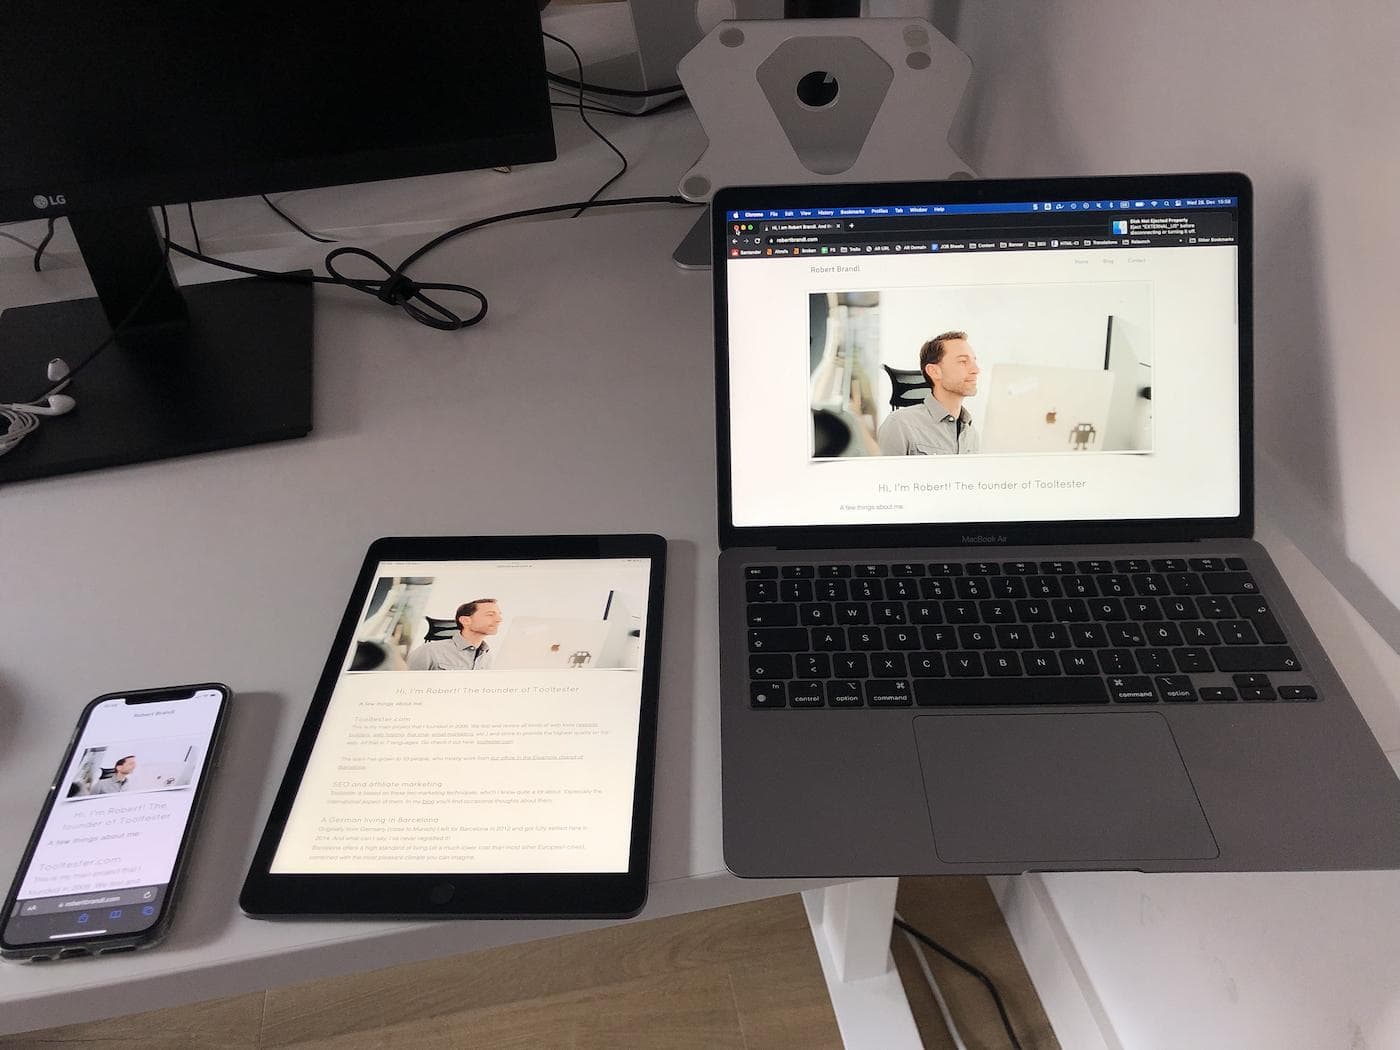 行動平板電腦和桌上型電腦上的 wix 網站